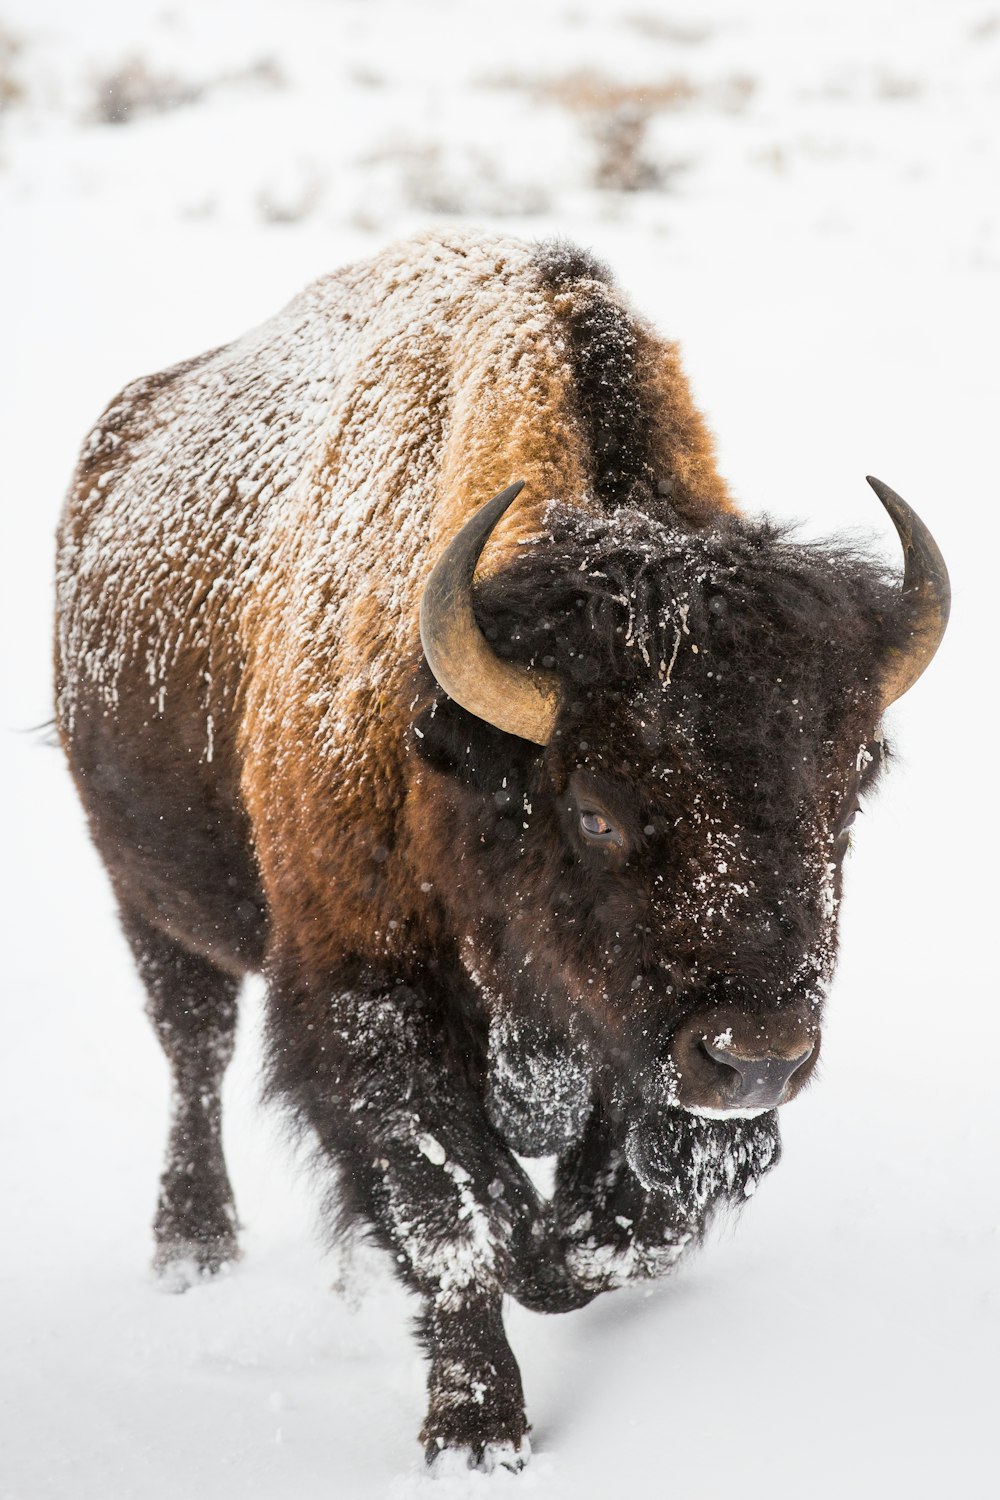 Brauner Bison auf weißem, schneebedecktem Boden während des Tages